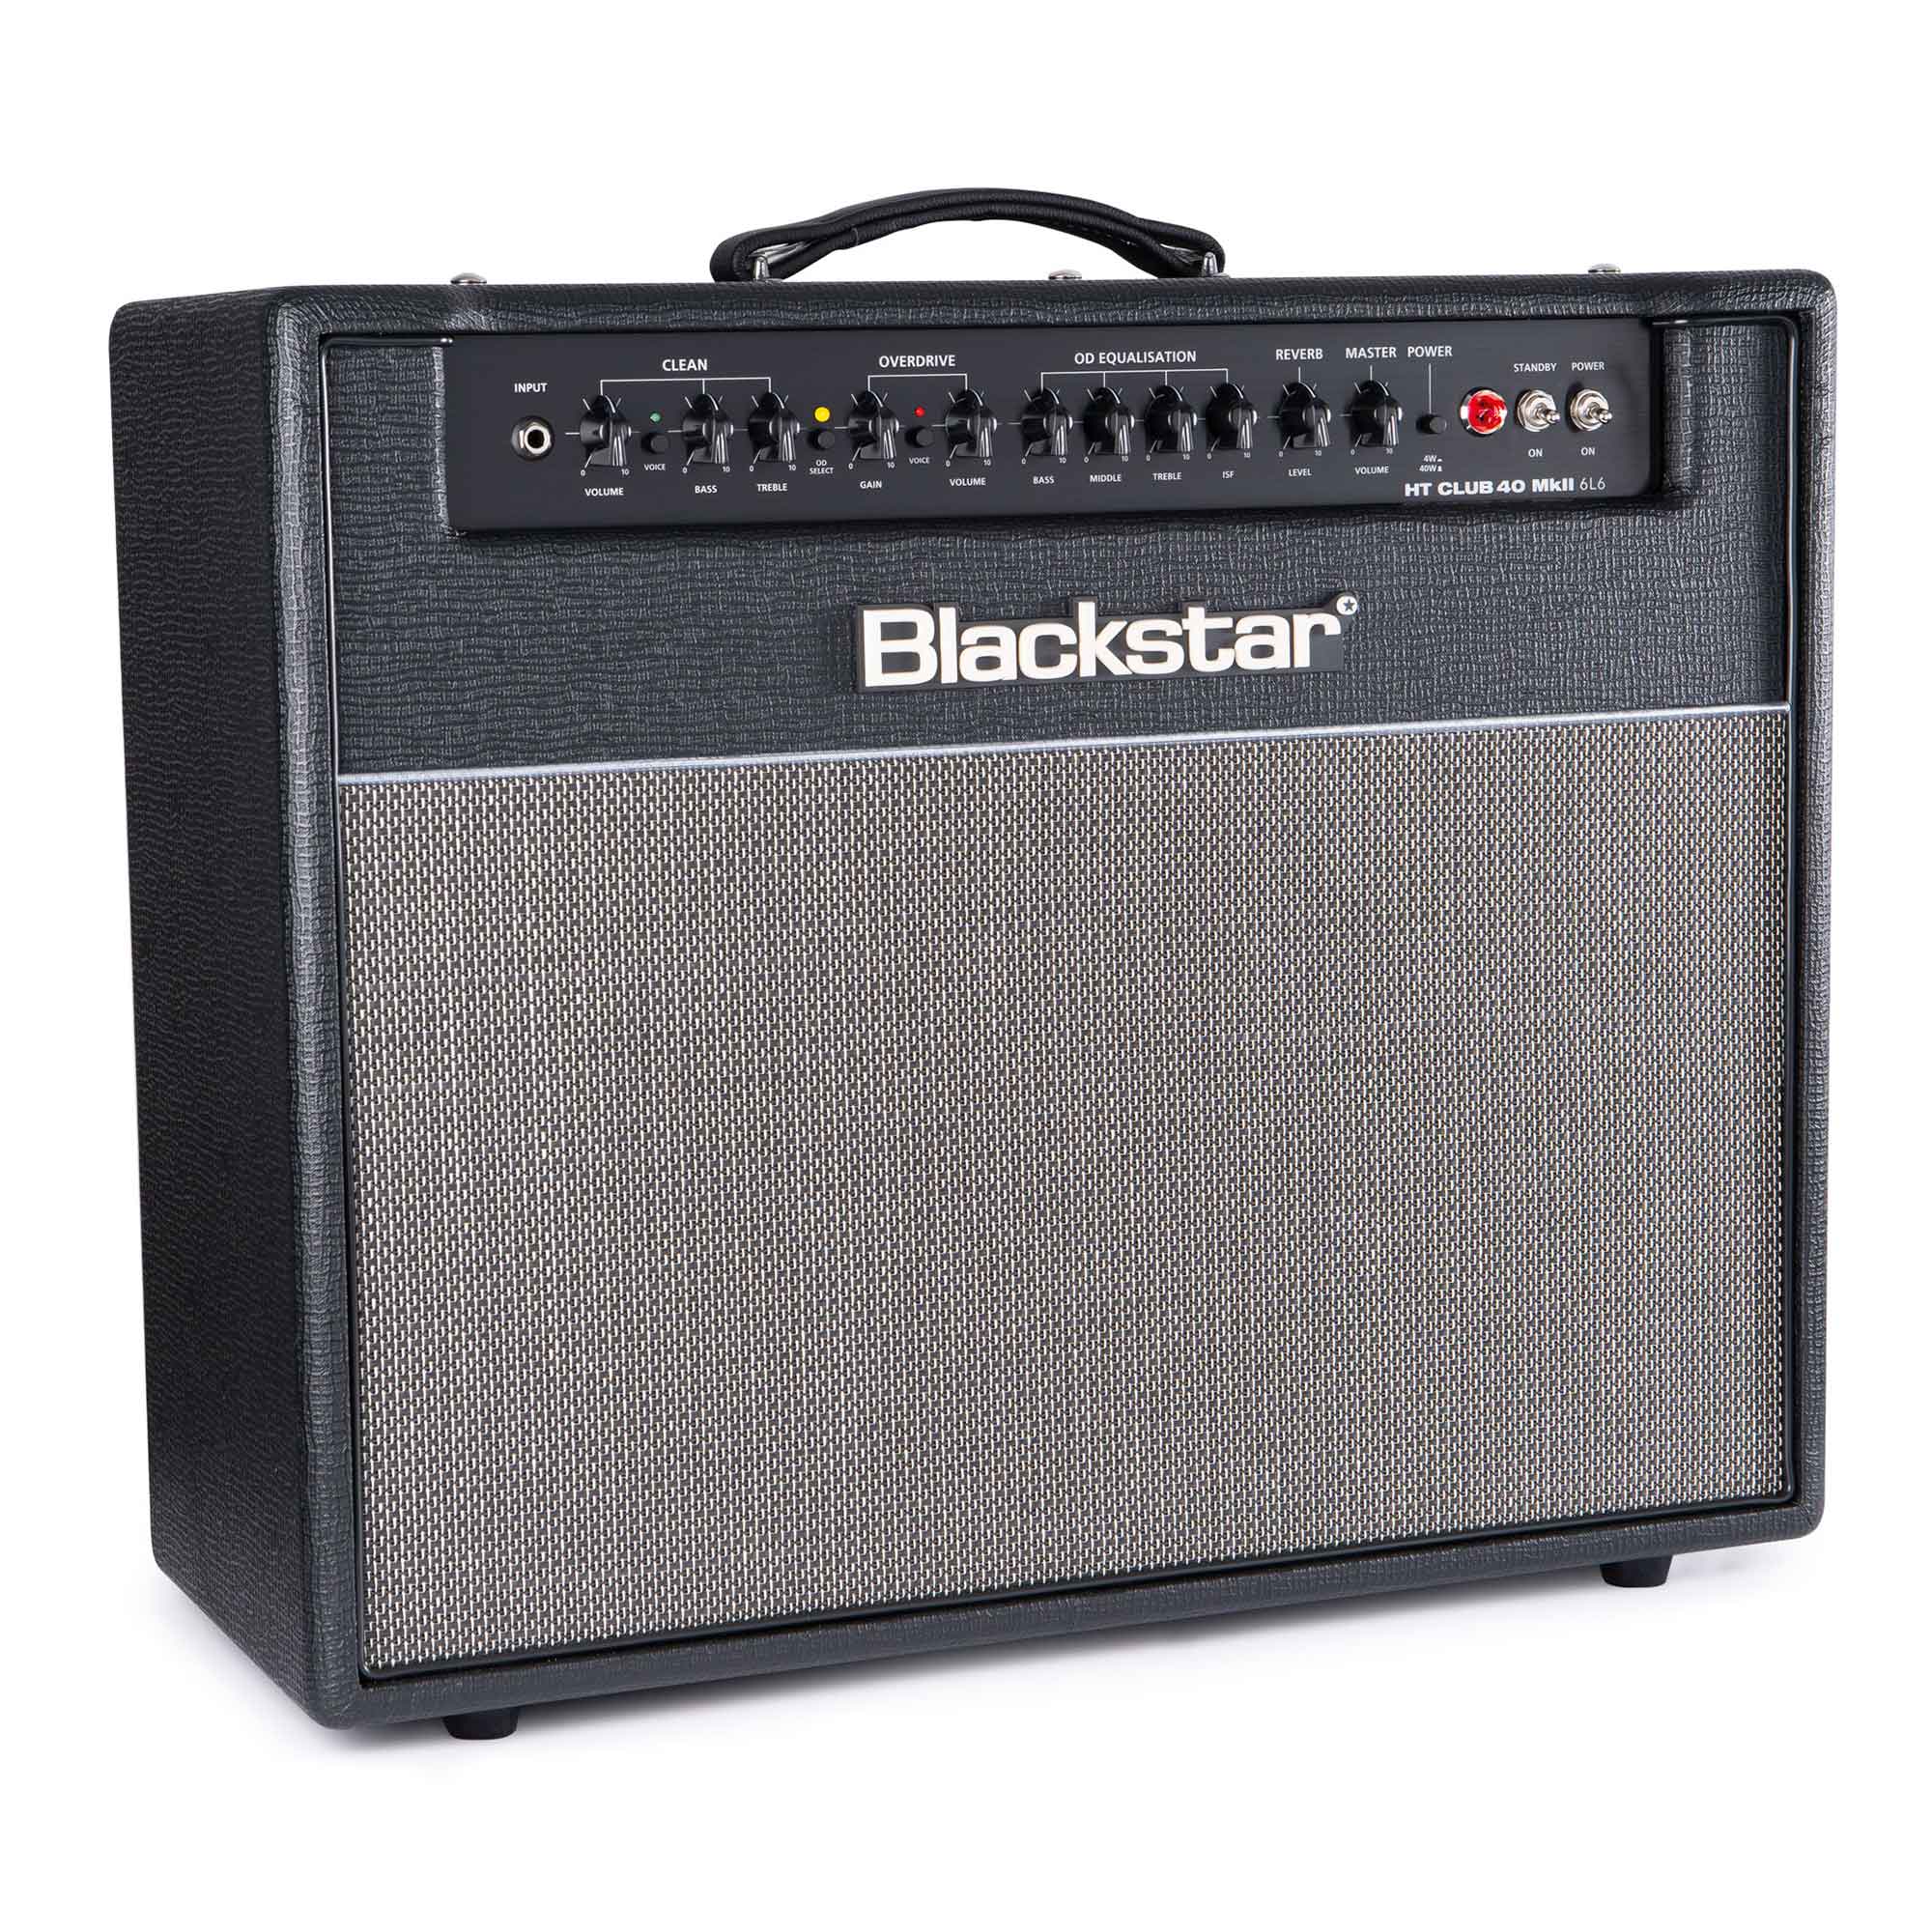 Blackstar Ht Club 40 Mkii 6l6 40w 1x12 Black - Combo amplificador para guitarra eléctrica - Variation 1